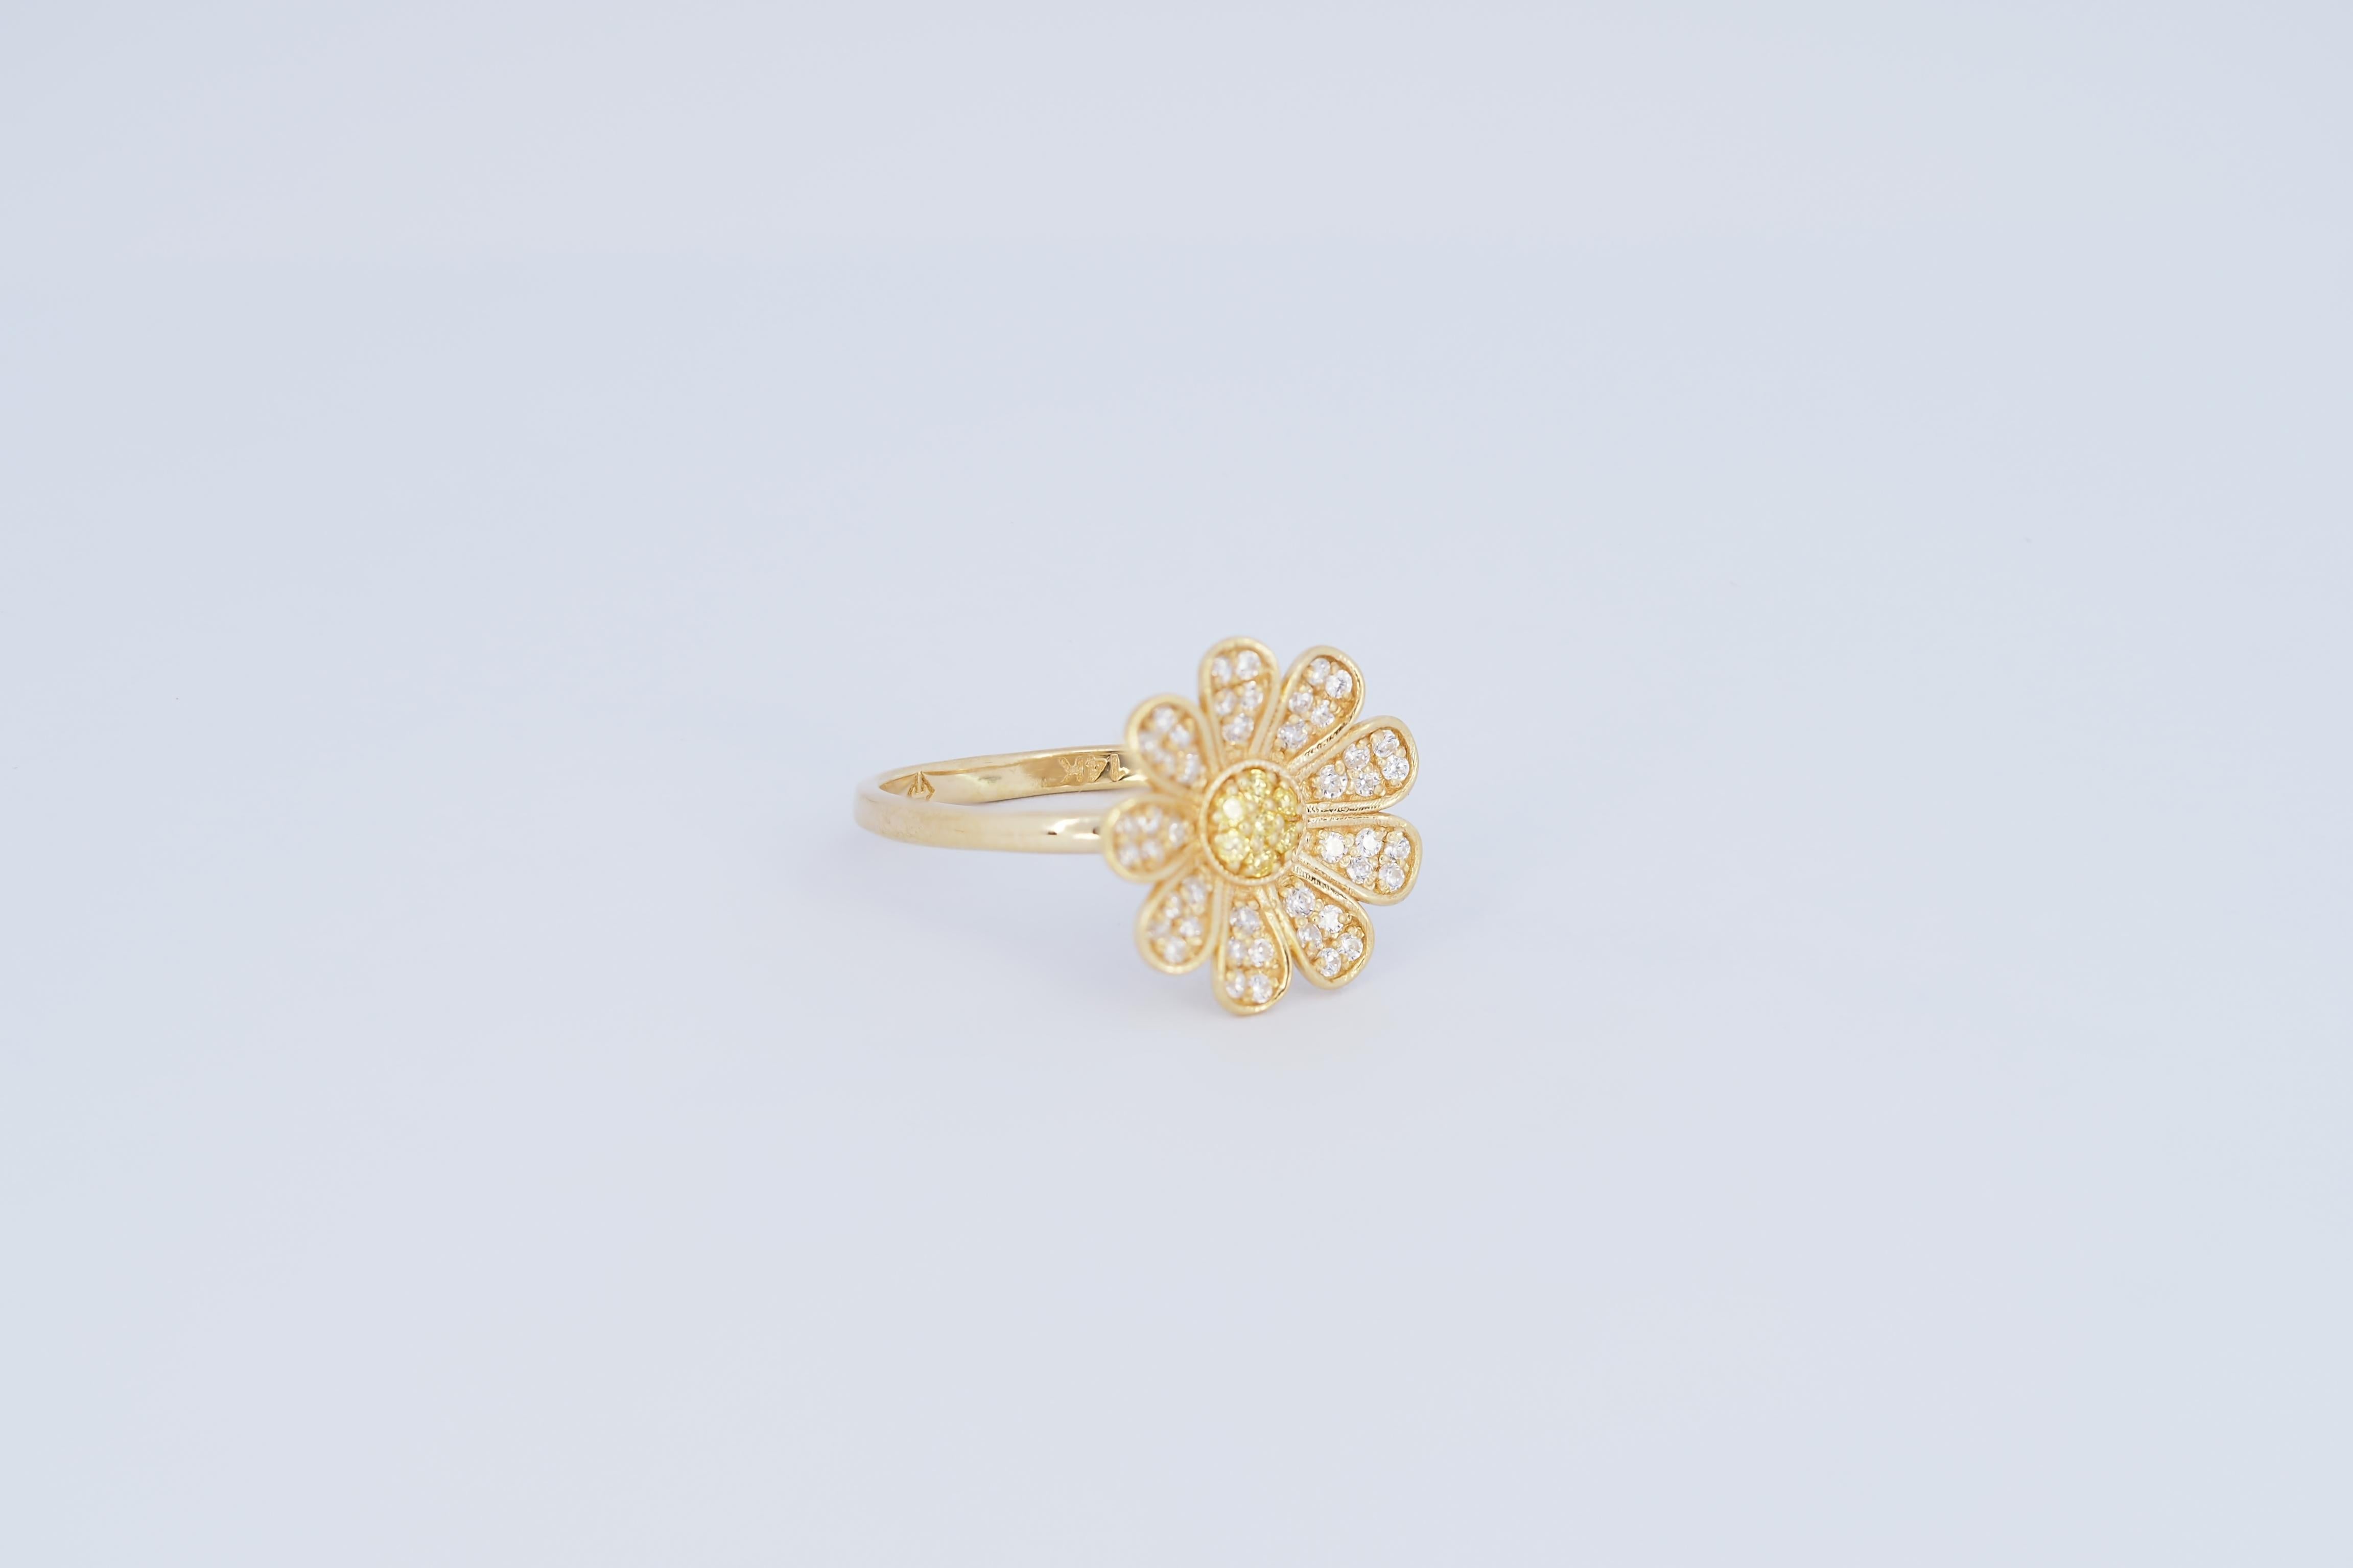 Daisy flower 14k gold ring 2